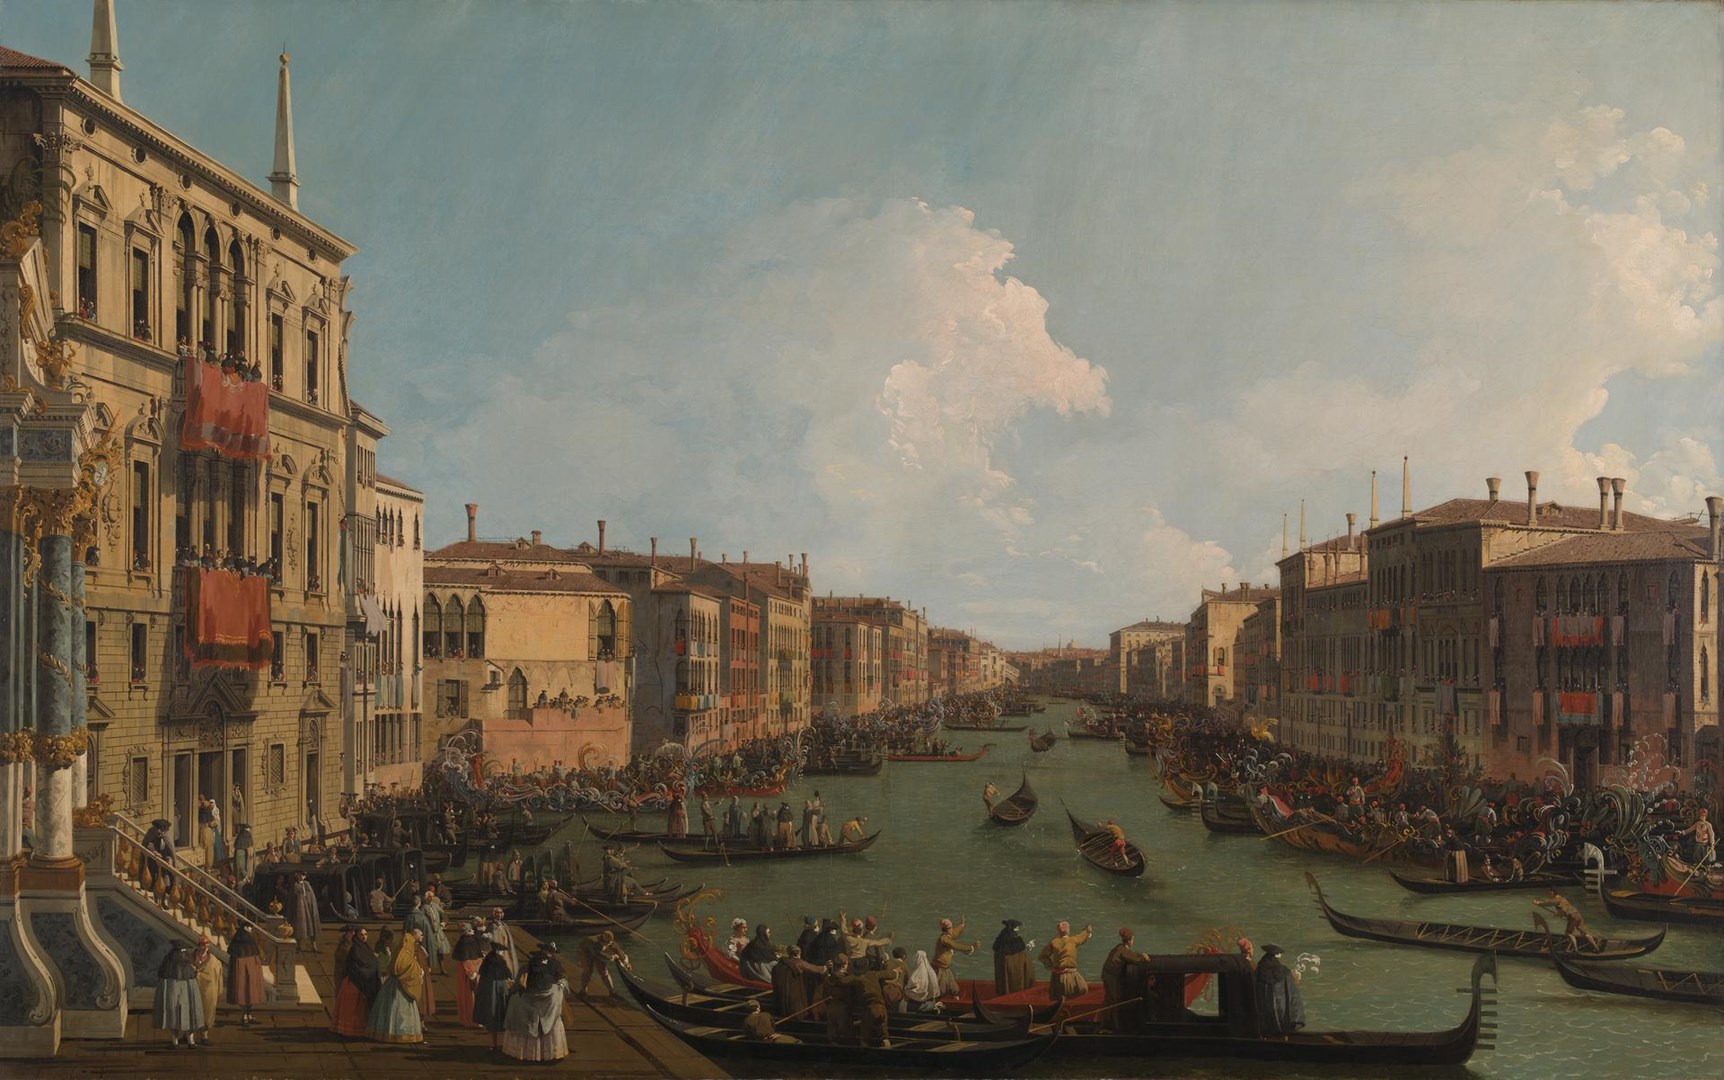 Canaletto, Regata sul Canal Grande (1740 circa; olio su tela, 117,2 x 186,7 cm; Londra, The National Gallery)
